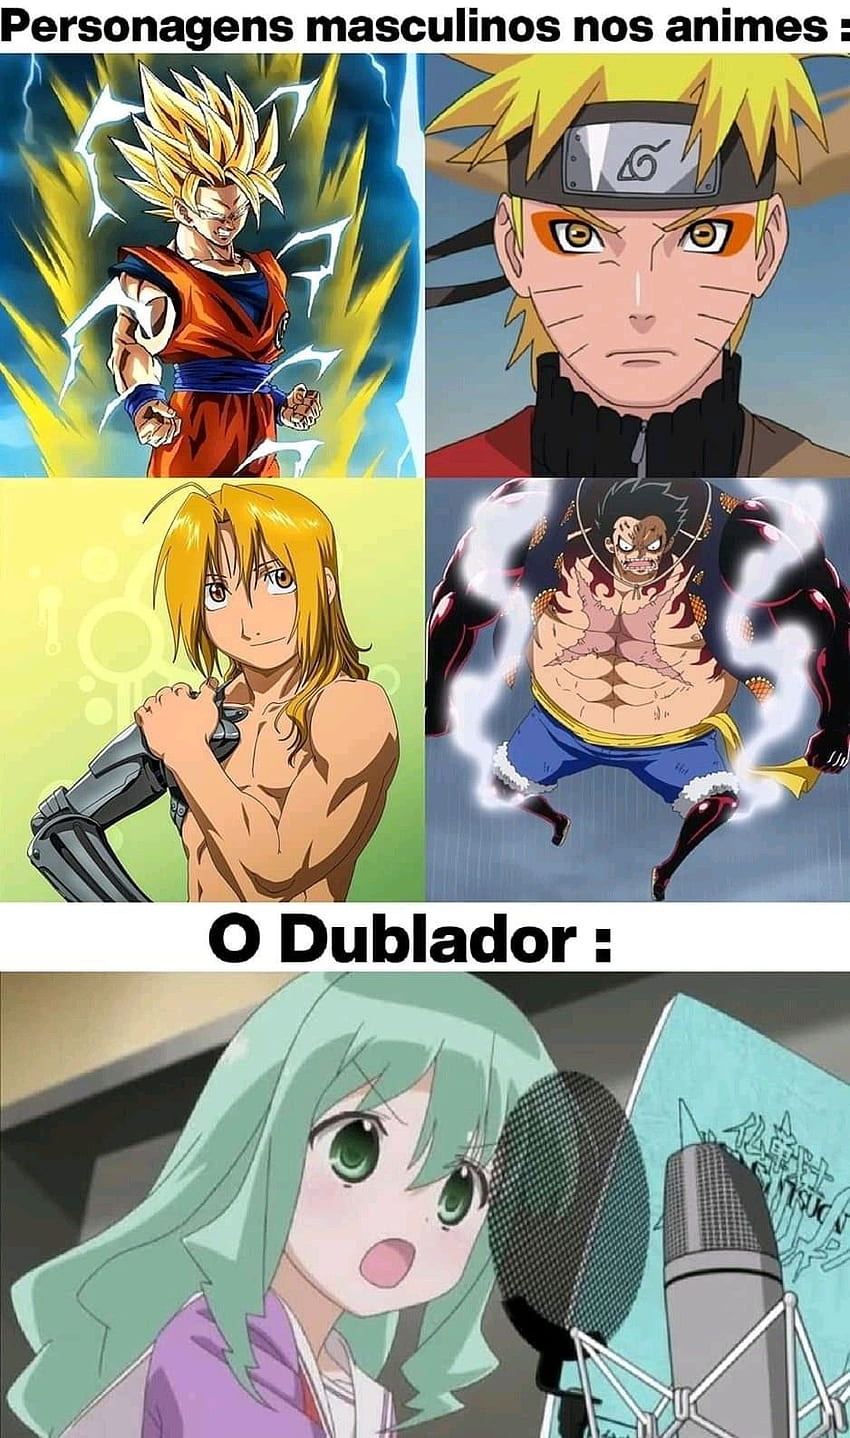 Sou a gi, suave? on Memes de Animes in 2020. Anime memes, Naruto memes,  Otaku meme HD phone wallpaper